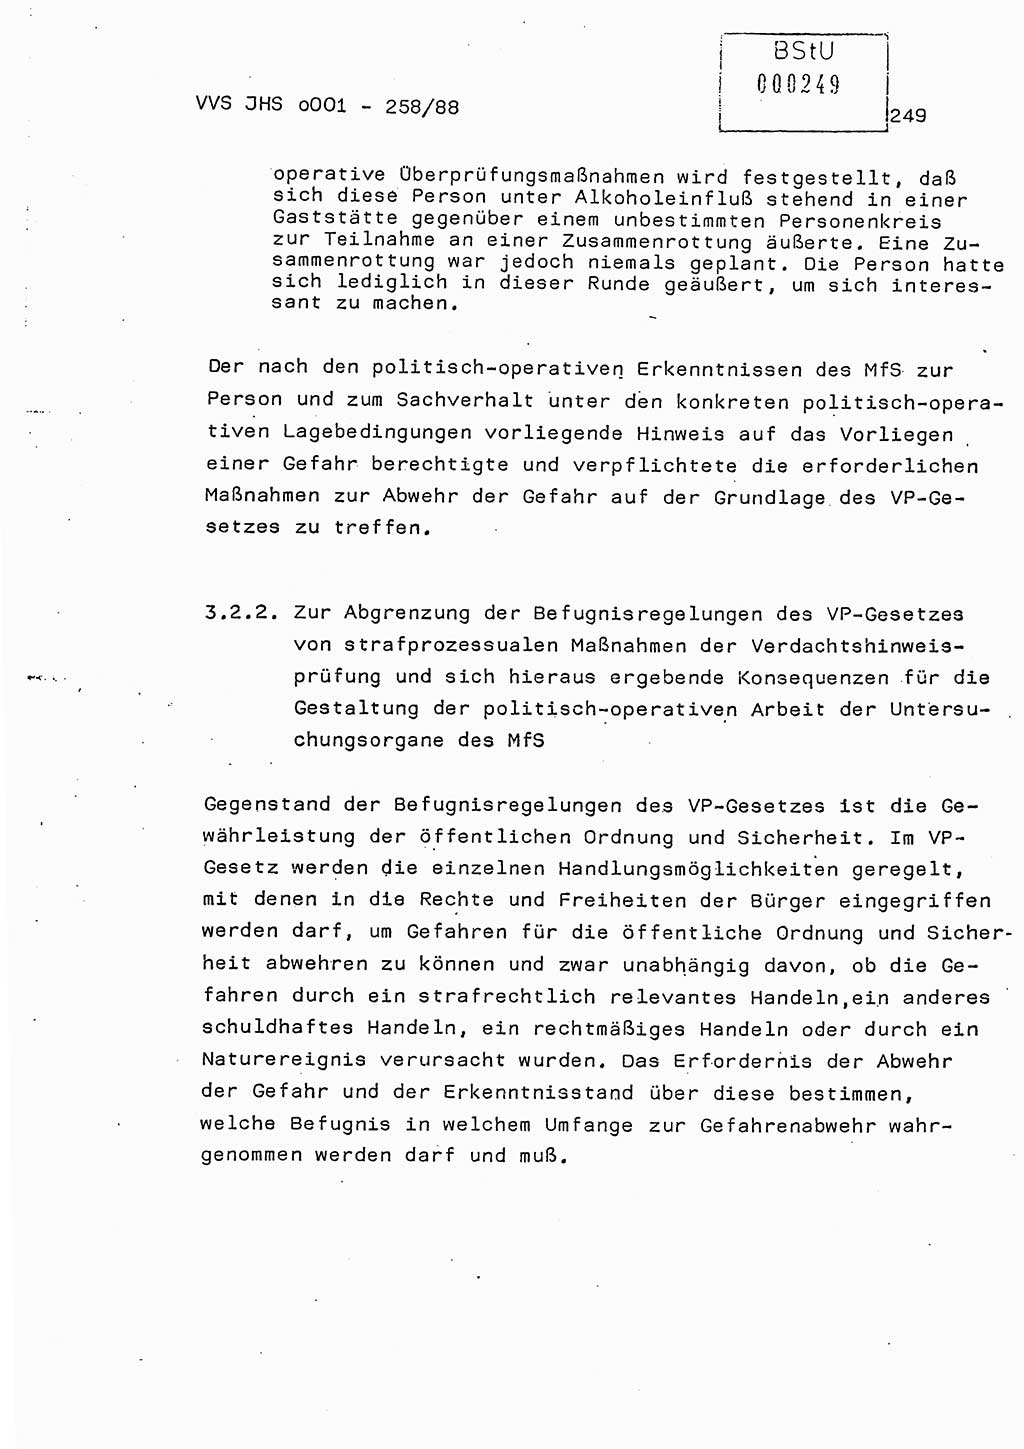 Dissertation, Oberleutnant Uwe Kärsten (JHS), Hauptmann Dr. Joachim Henkel (JHS), Oberstleutnant Werner Mählitz (Leiter der Abt. Ⅸ BV Rostock), Oberstleutnant Jürgen Tröge (HA Ⅸ/AKG), Oberstleutnant Winfried Ziegler (HA Ⅸ/9), Major Wolf-Rüdiger Wurzler (JHS), Ministerium für Staatssicherheit (MfS) [Deutsche Demokratische Republik (DDR)], Juristische Hochschule (JHS), Vertrauliche Verschlußsache (VVS) o001-258/88, Potsdam 1988, Seite 248 (Diss. MfS DDR JHS VVS o001-258/88 1988, S. 248)